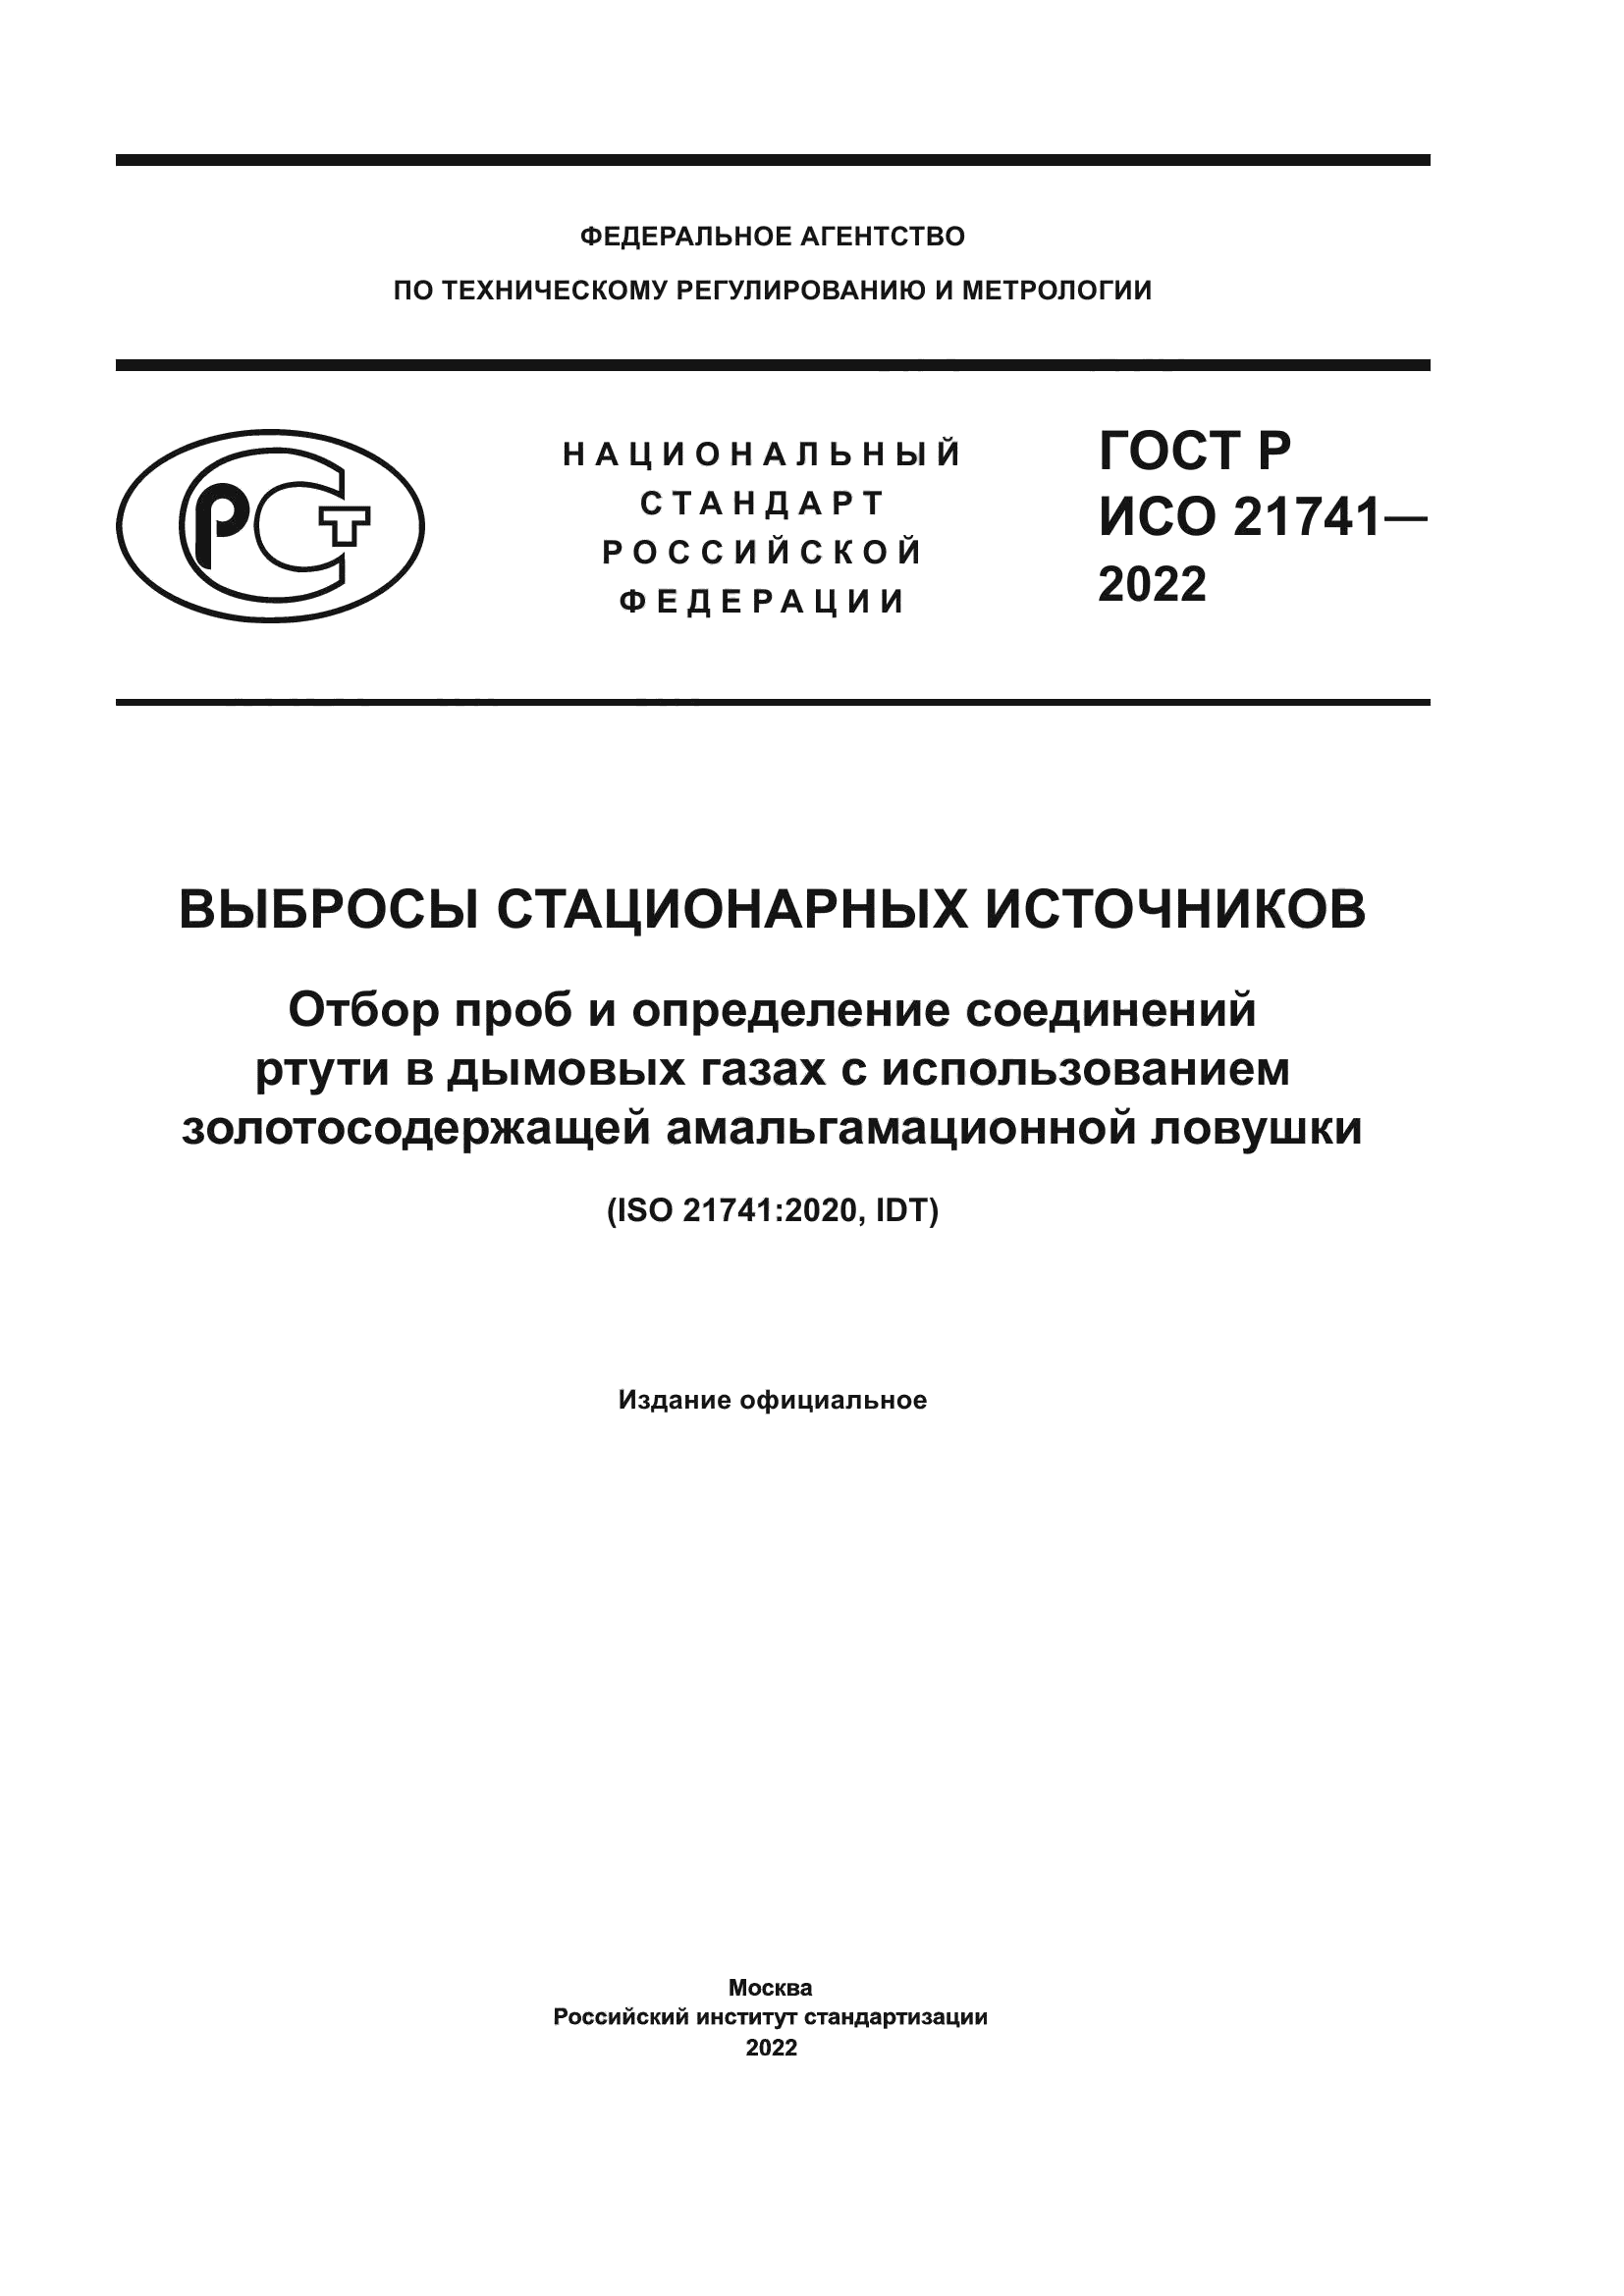 ГОСТ Р ИСО 21741-2022